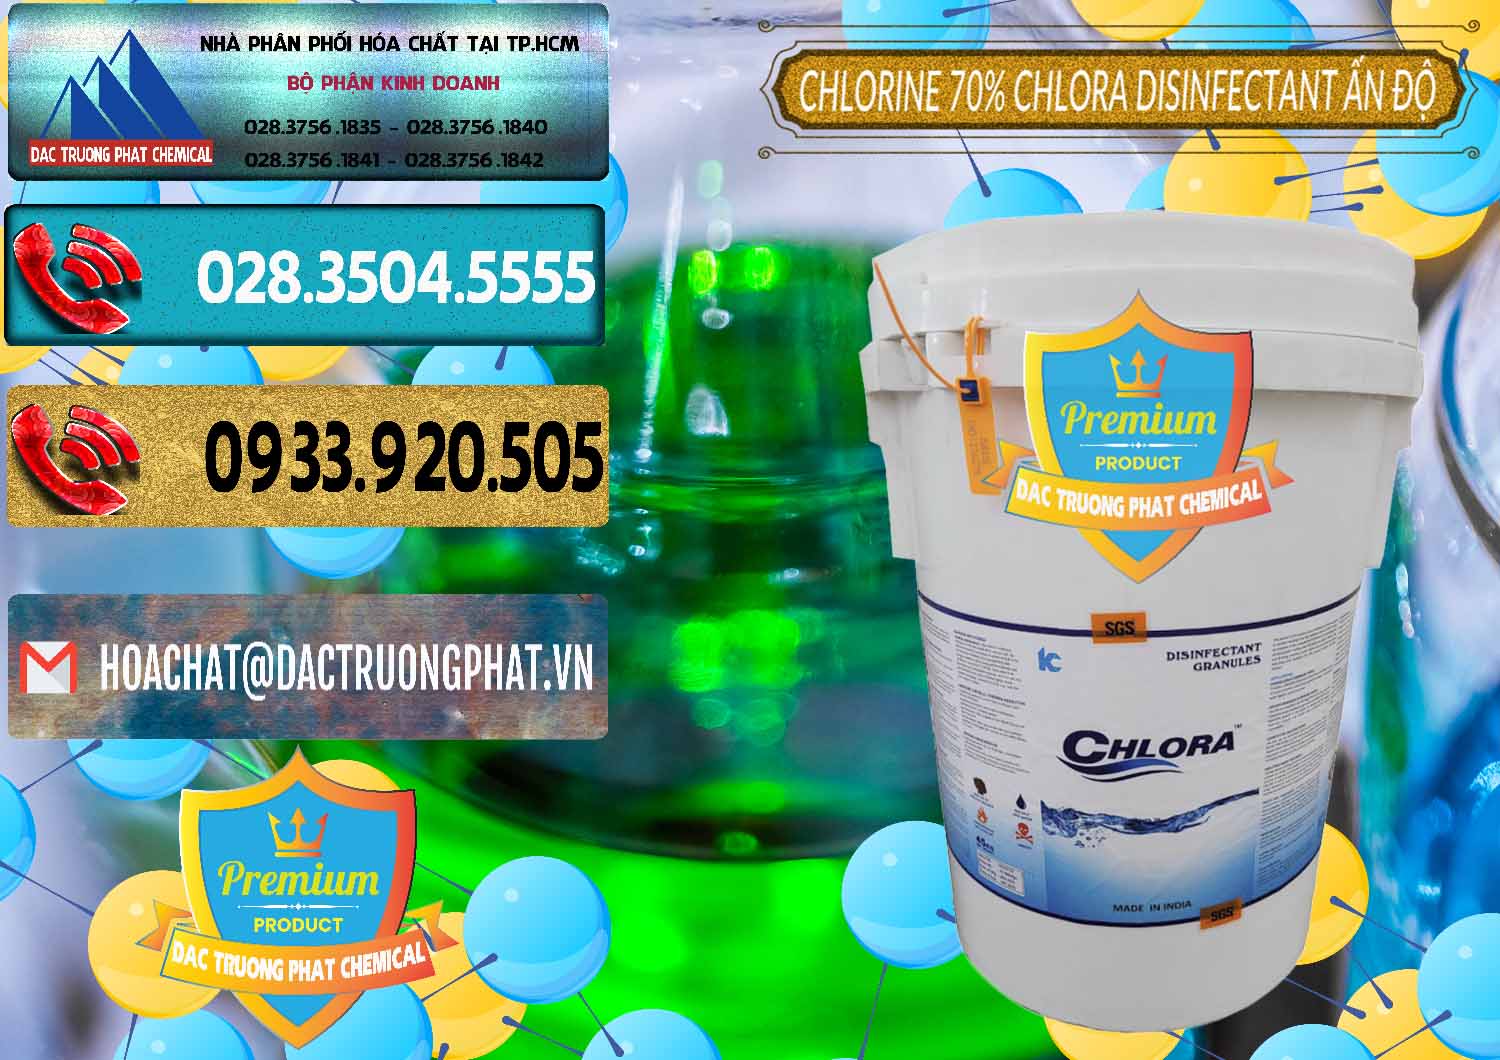 Đơn vị cung ứng & bán Chlorine – Clorin 70% Chlora Disinfectant Ấn Độ India - 0213 - Cty chuyên phân phối _ bán hóa chất tại TP.HCM - hoachatdetnhuom.com